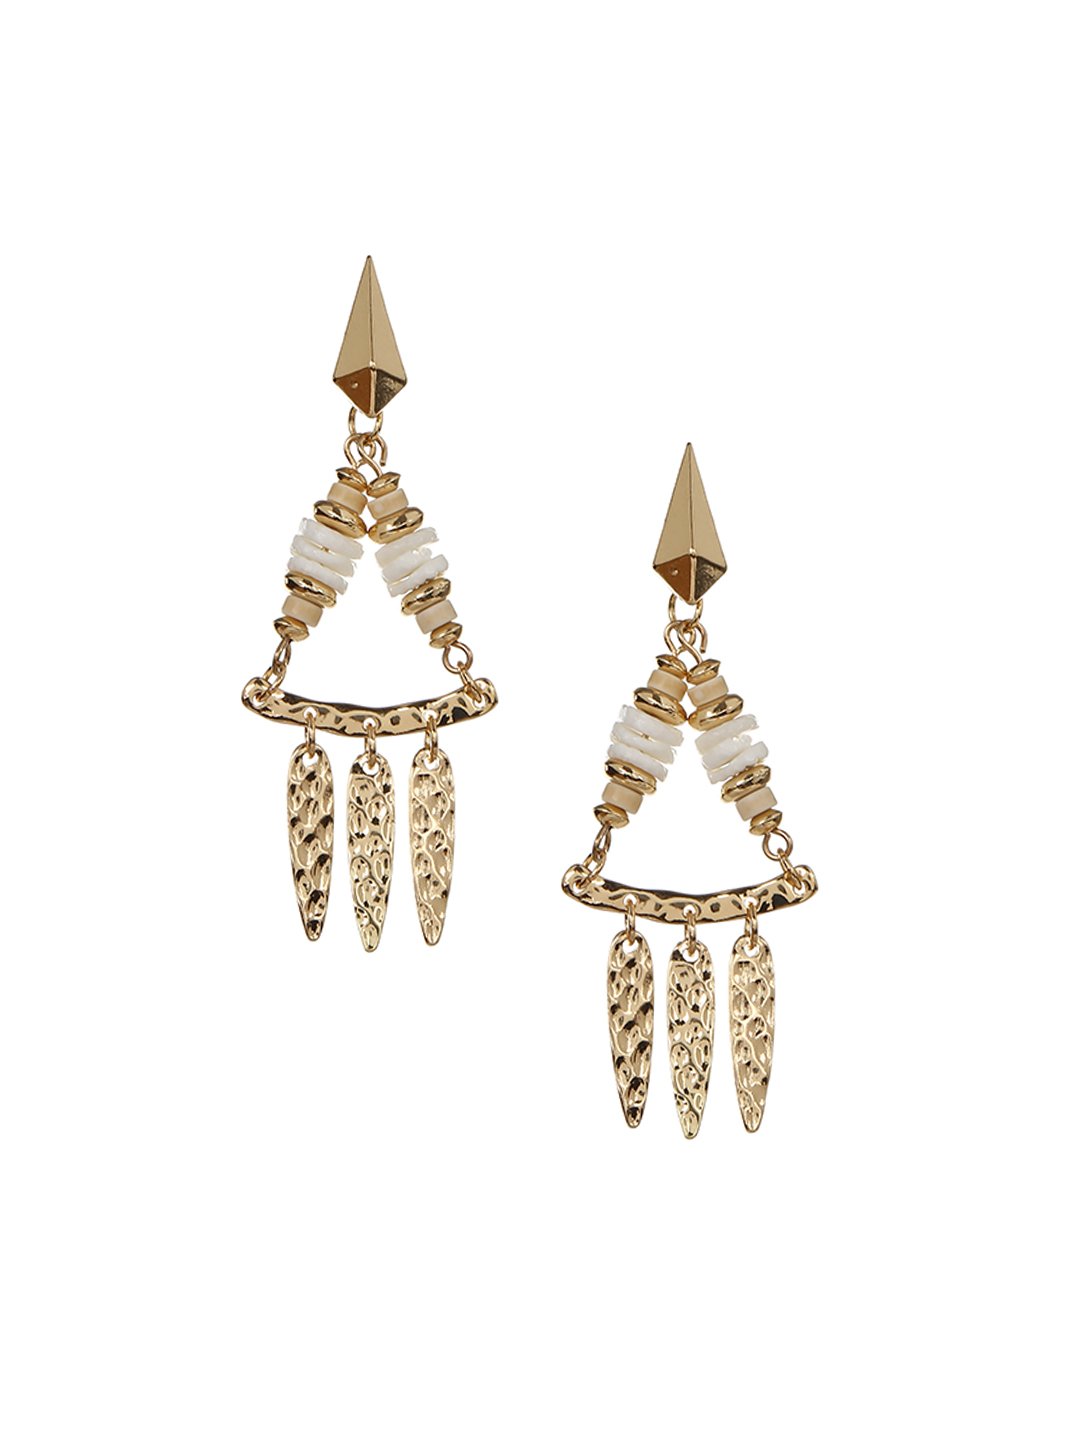 Gold toned drop earrings